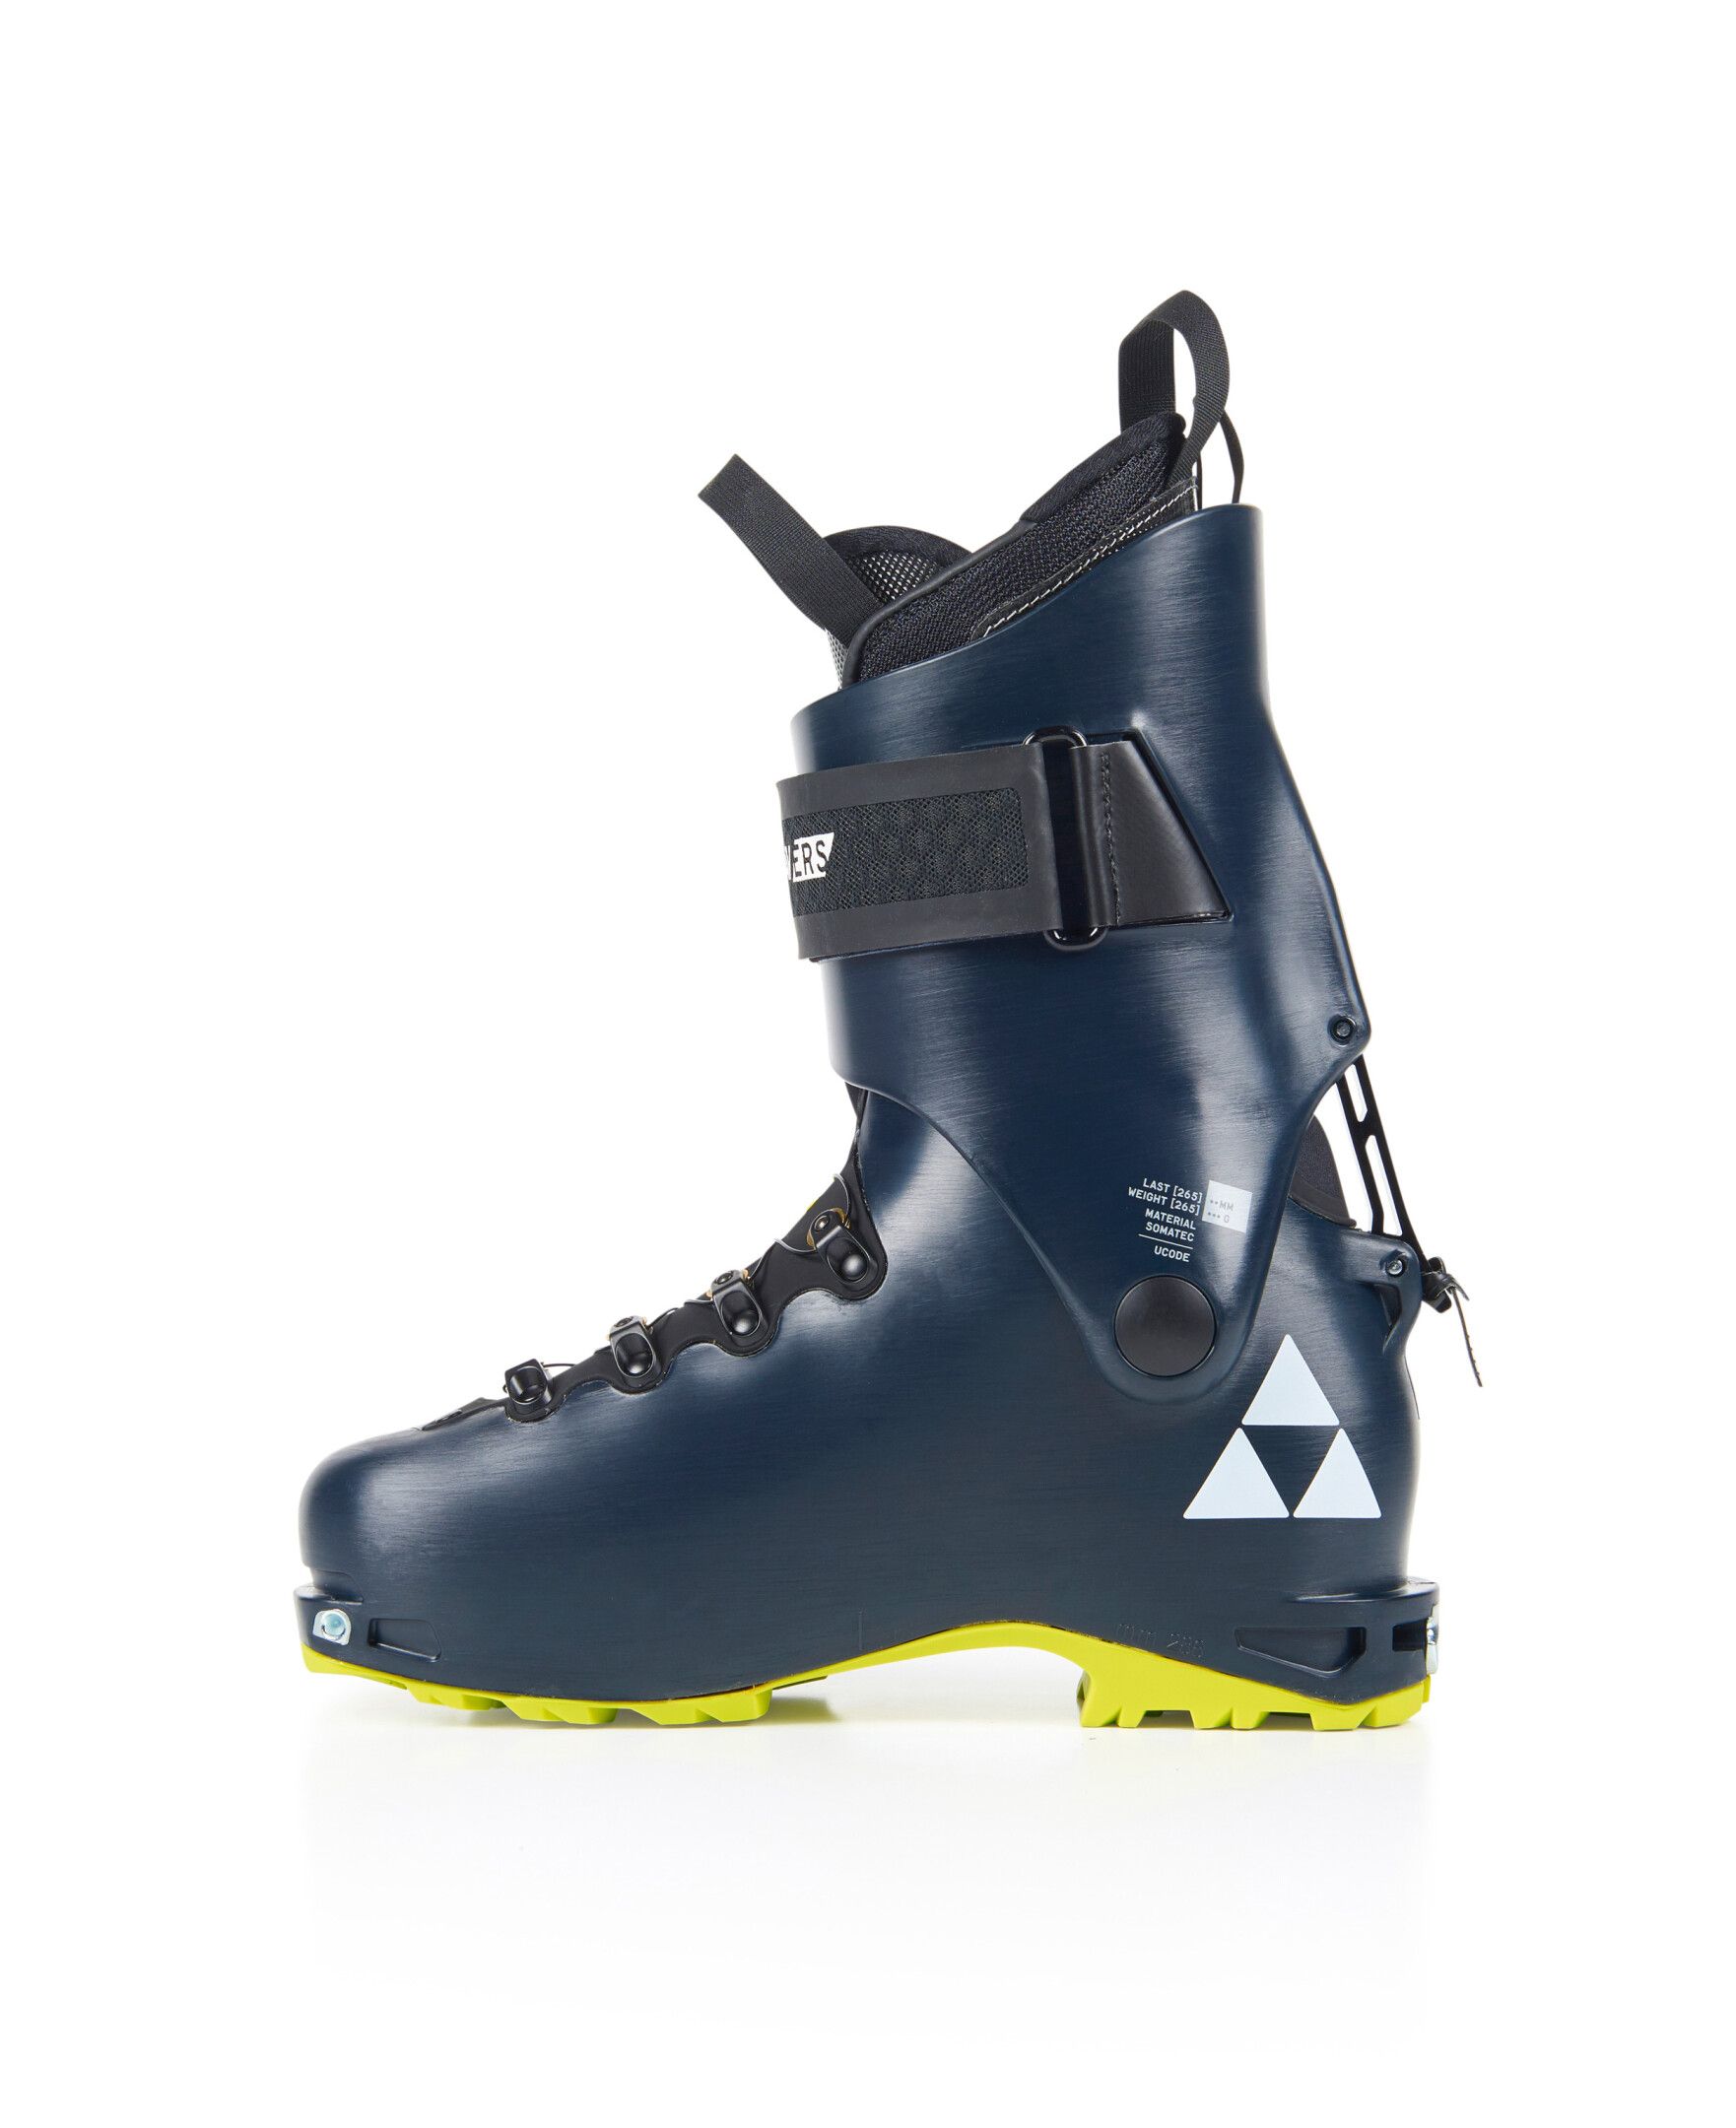 Chaussures de ski de randonnée Travers GR - Bleu marine 